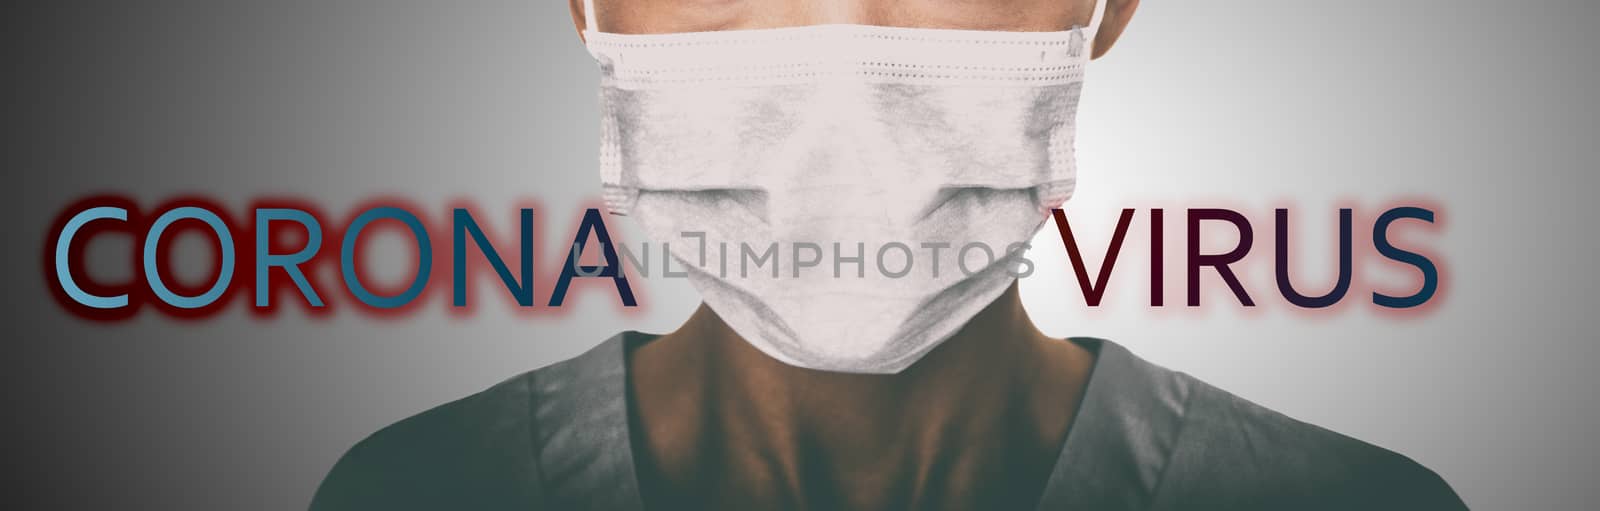 Corona virus coronavirus hospital mask header doctor wearing face masks prevention banner panoramic background.